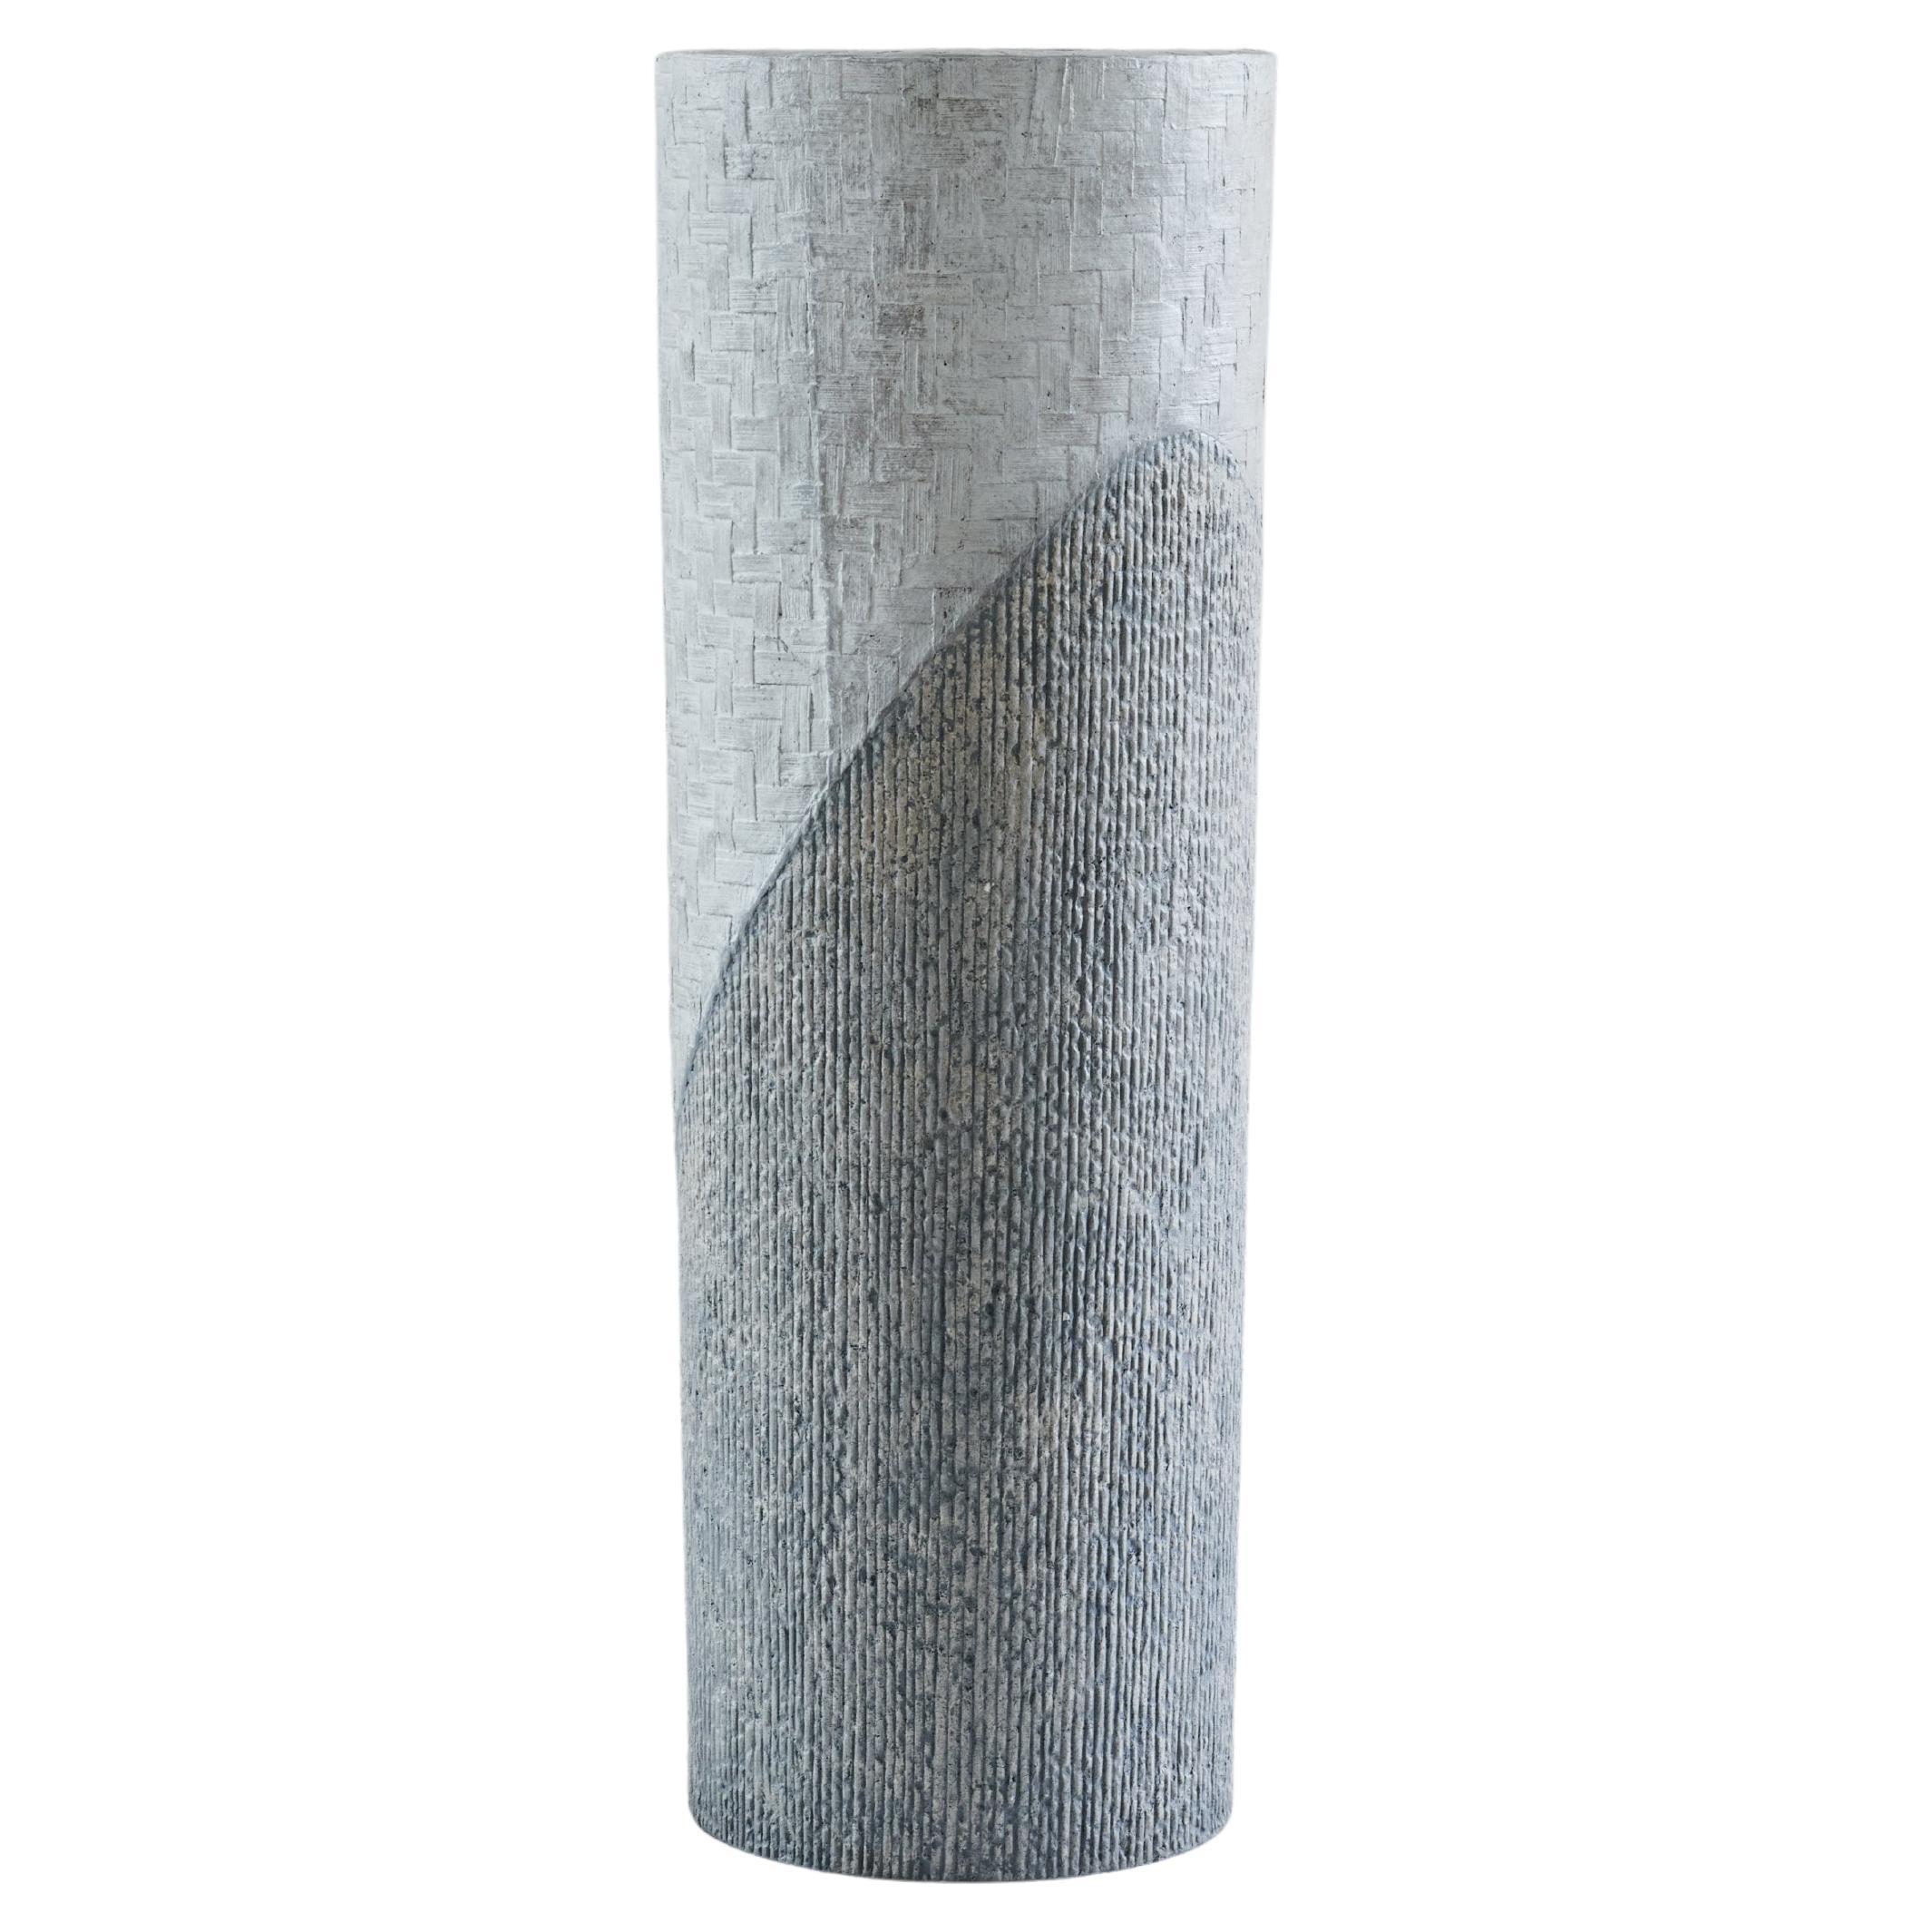 Grand vase composite en pierre calcaire et papier blanc et gris déchiqueté du Studio Laurence en vente